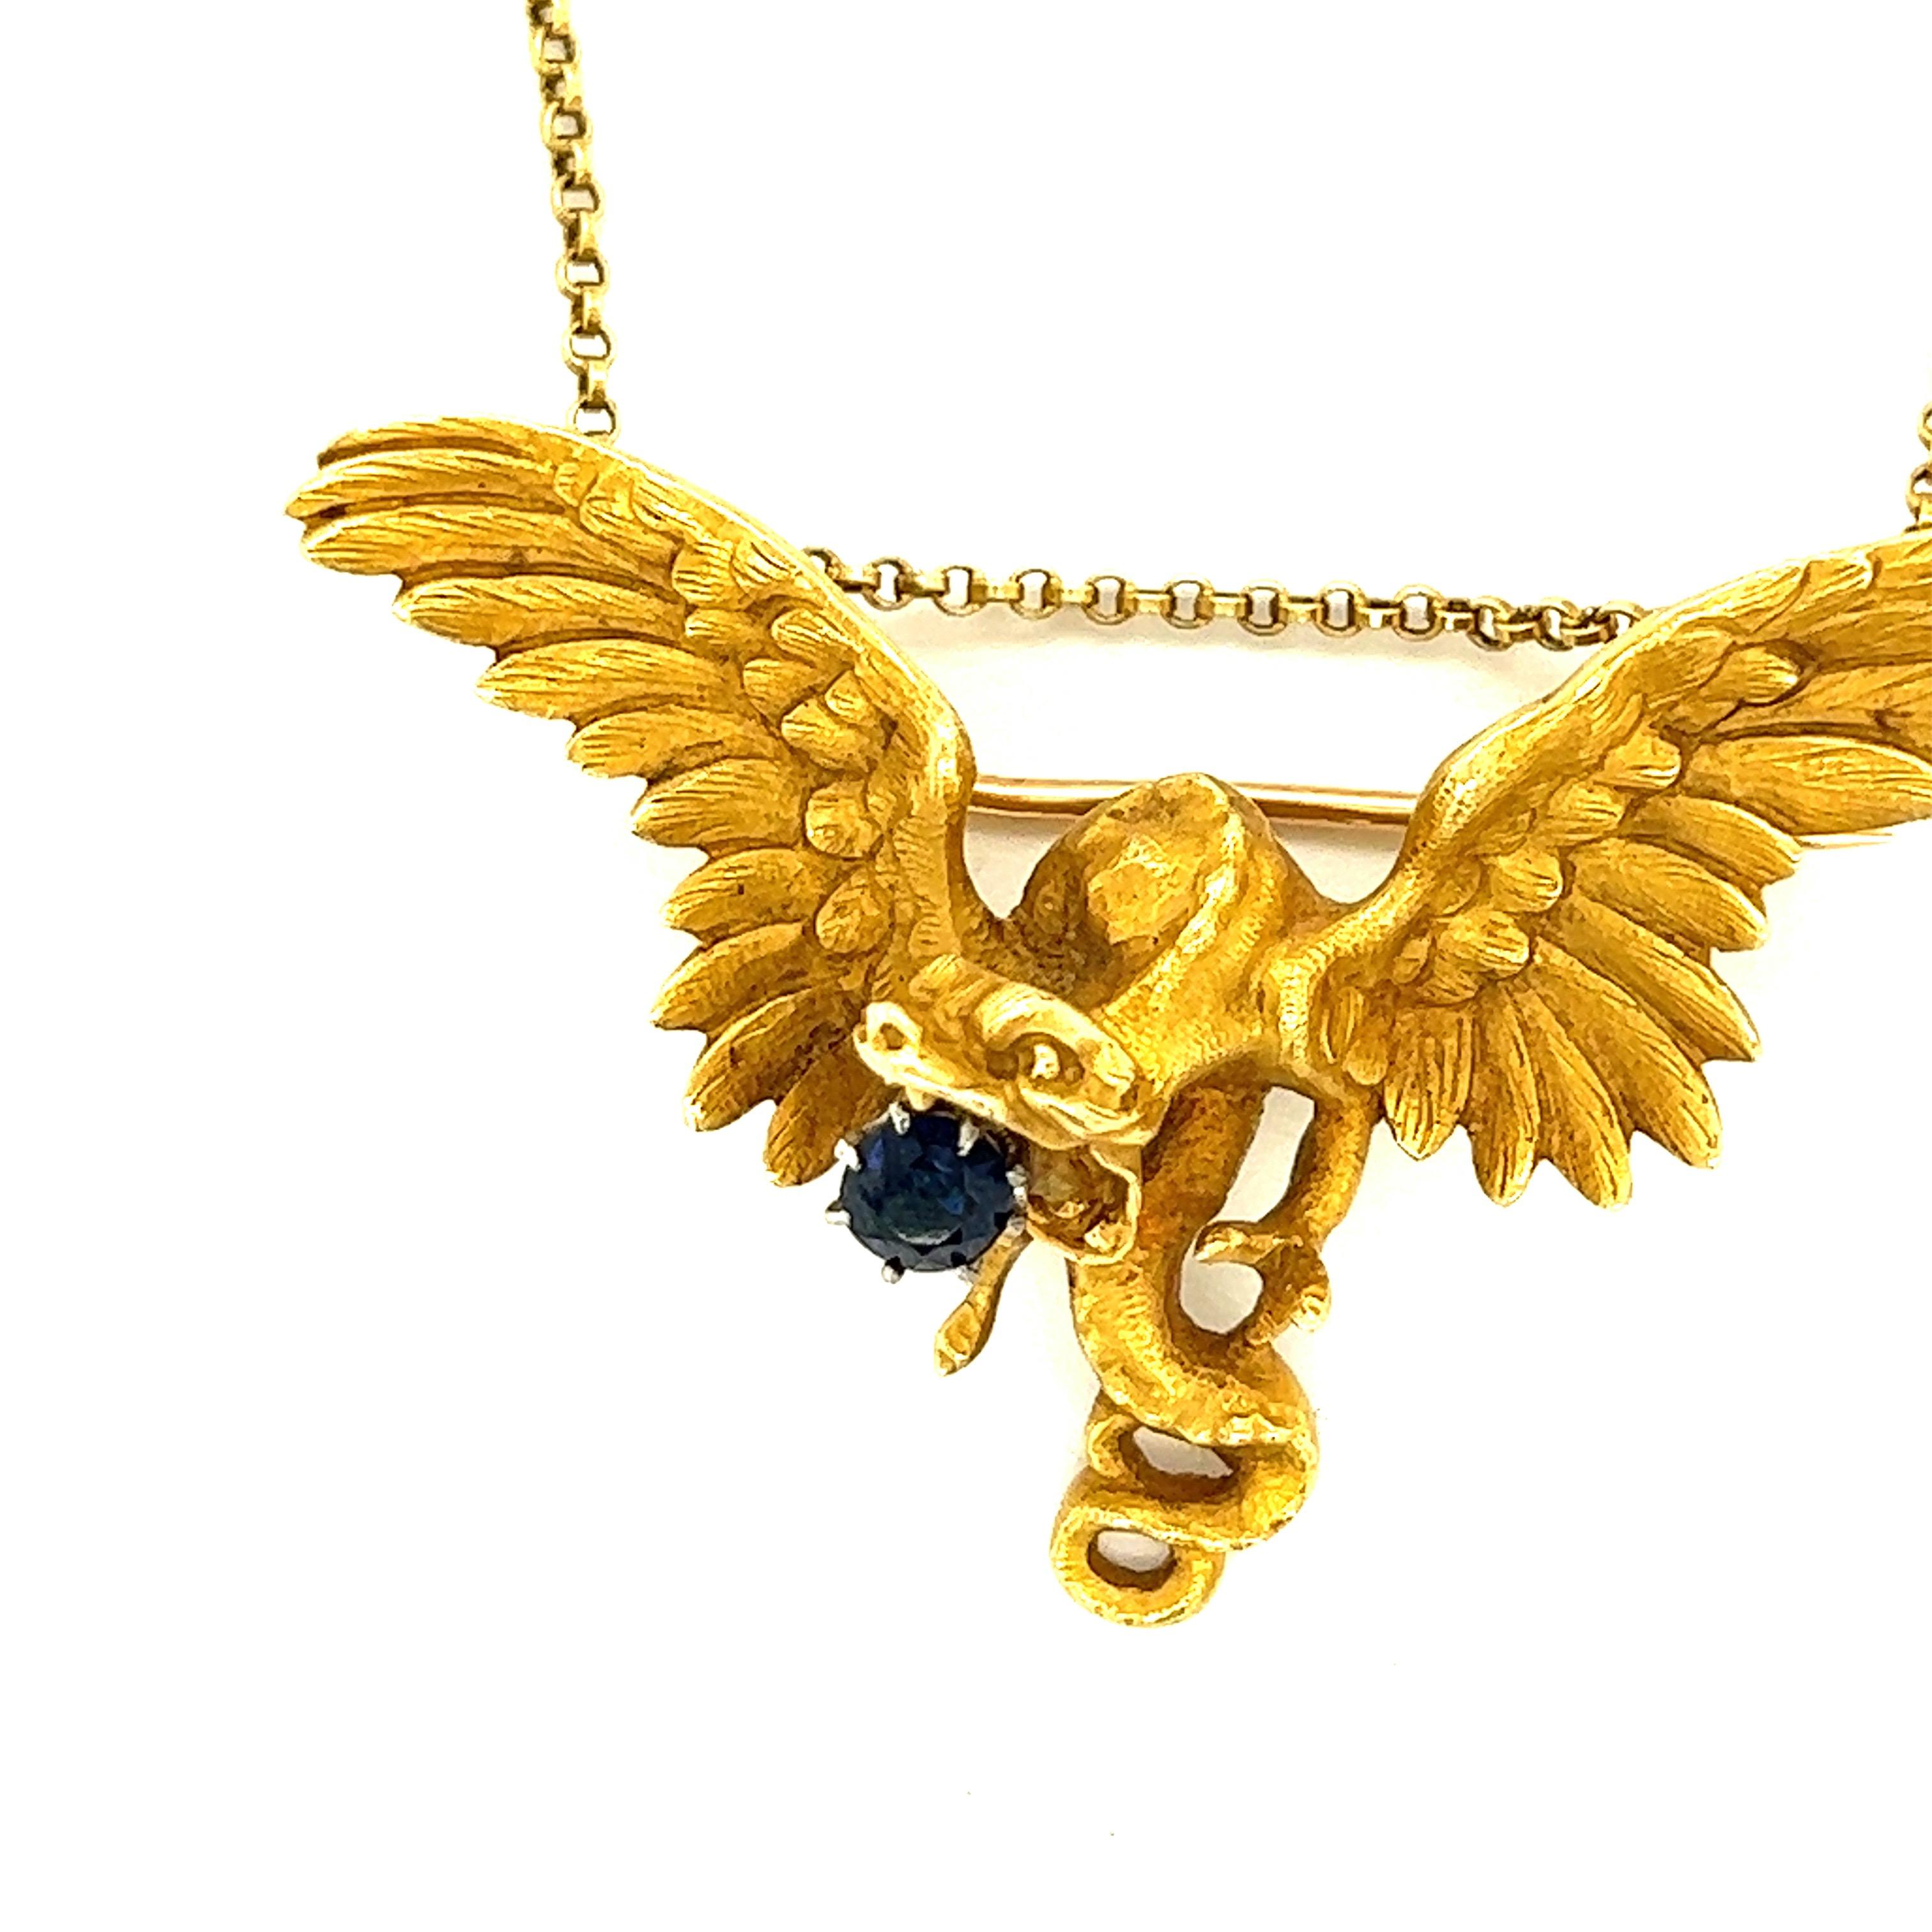 Collier pendentif oiseau en or jaune 18 carats et saphirs

Un saphir de taille ronde, serti sur de l'or jaune 18 carats, présentant un motif d'oiseau aux ailes déployées ; le pendentif peut être transformé en broche.

Taille : Largeur du pendentif